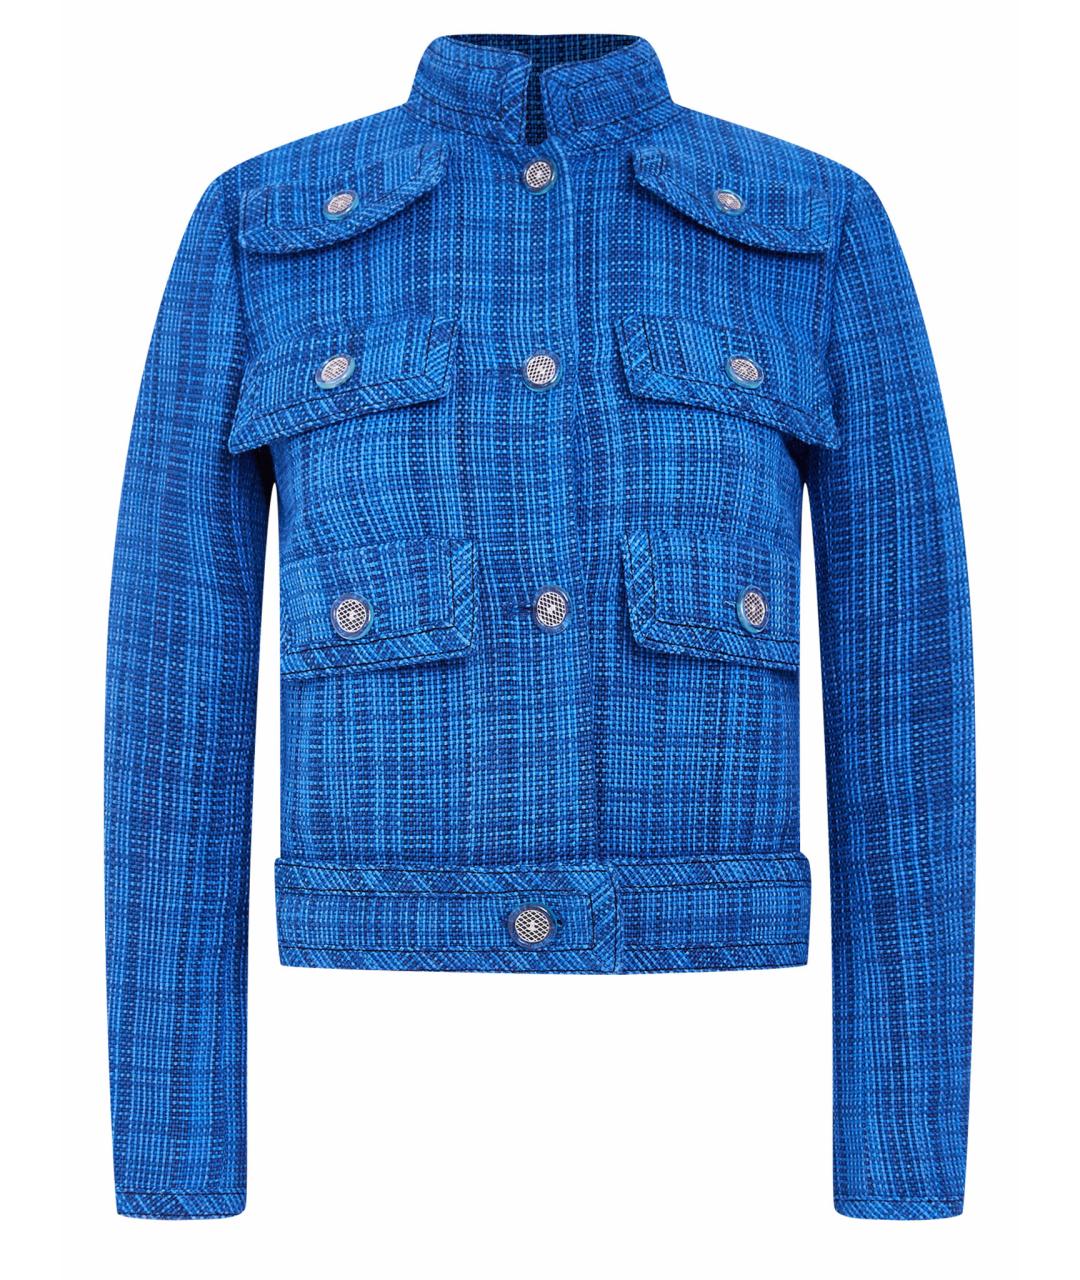 CHANEL Синий хлопковый жакет/пиджак, фото 1